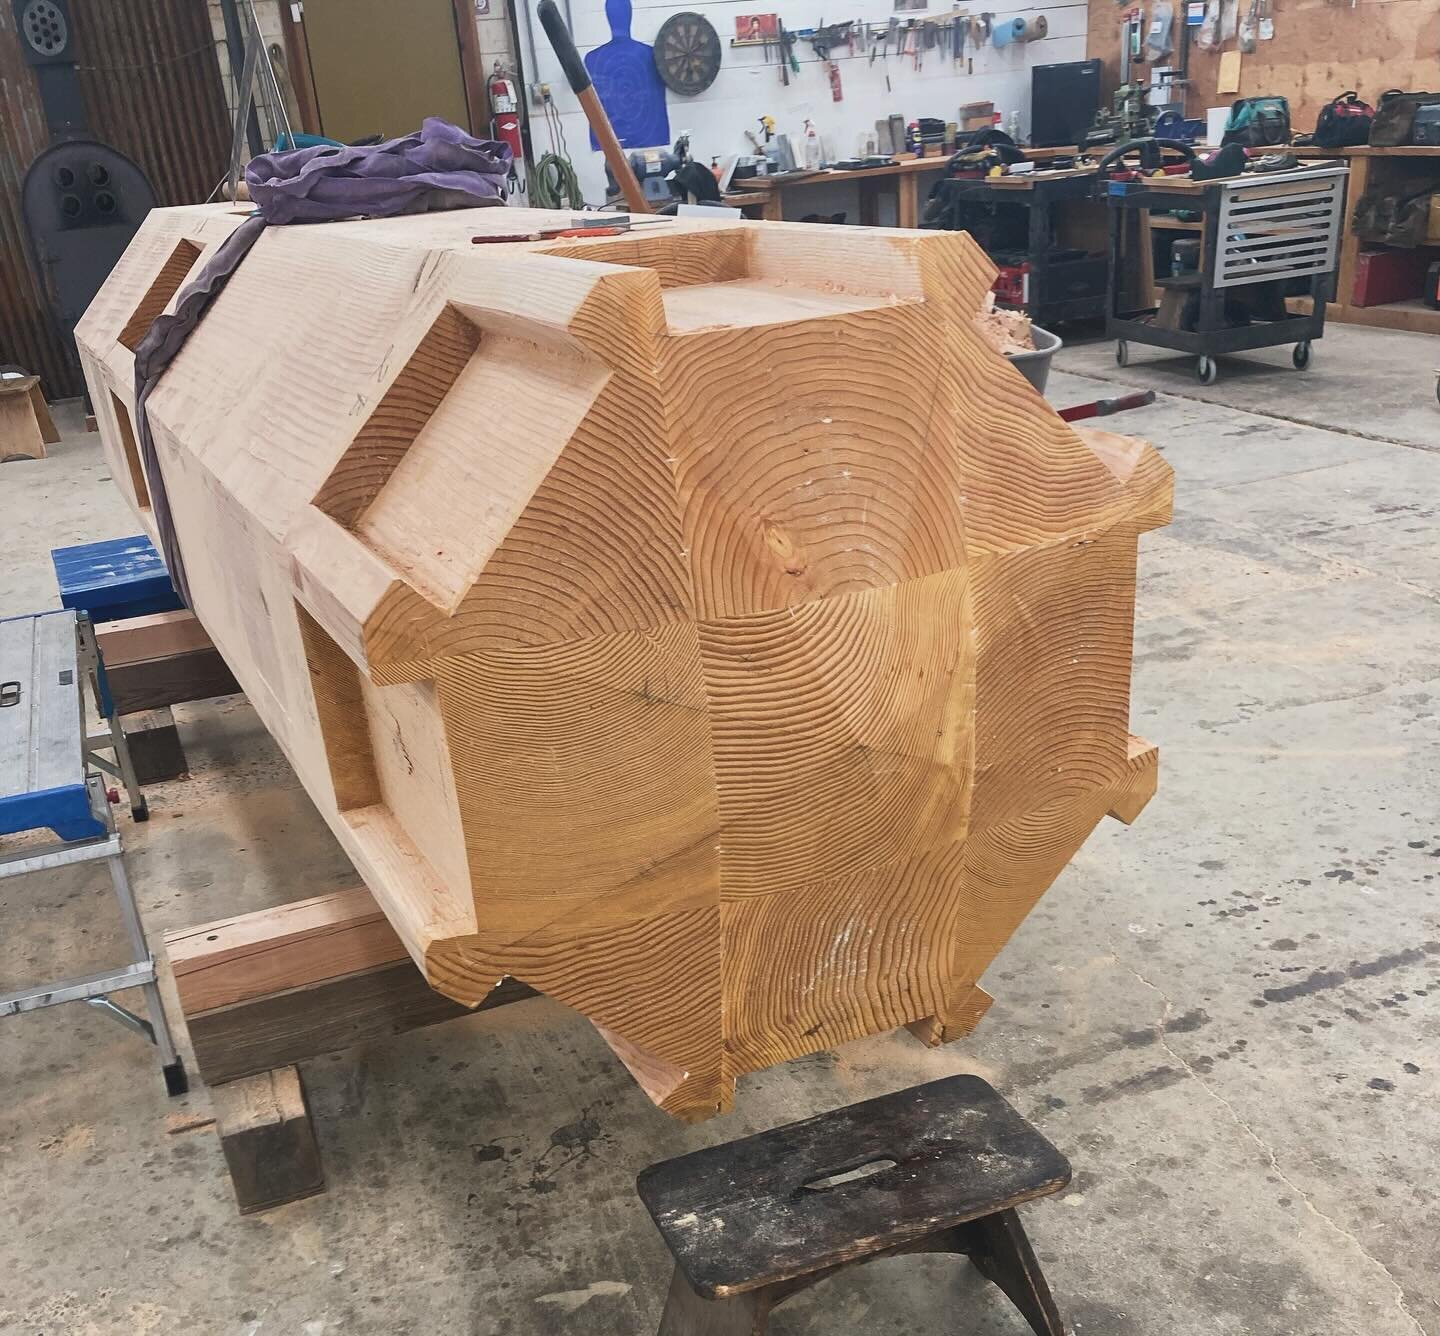 木 A few progress shots and our joinery layout tool &ldquo;Bigger Al&rdquo; Chops had fabricated.
&zwnj;
#craftistheremedy
#timberframe
#craftsmanship
#sandpointidaho
#shelter
#idaho